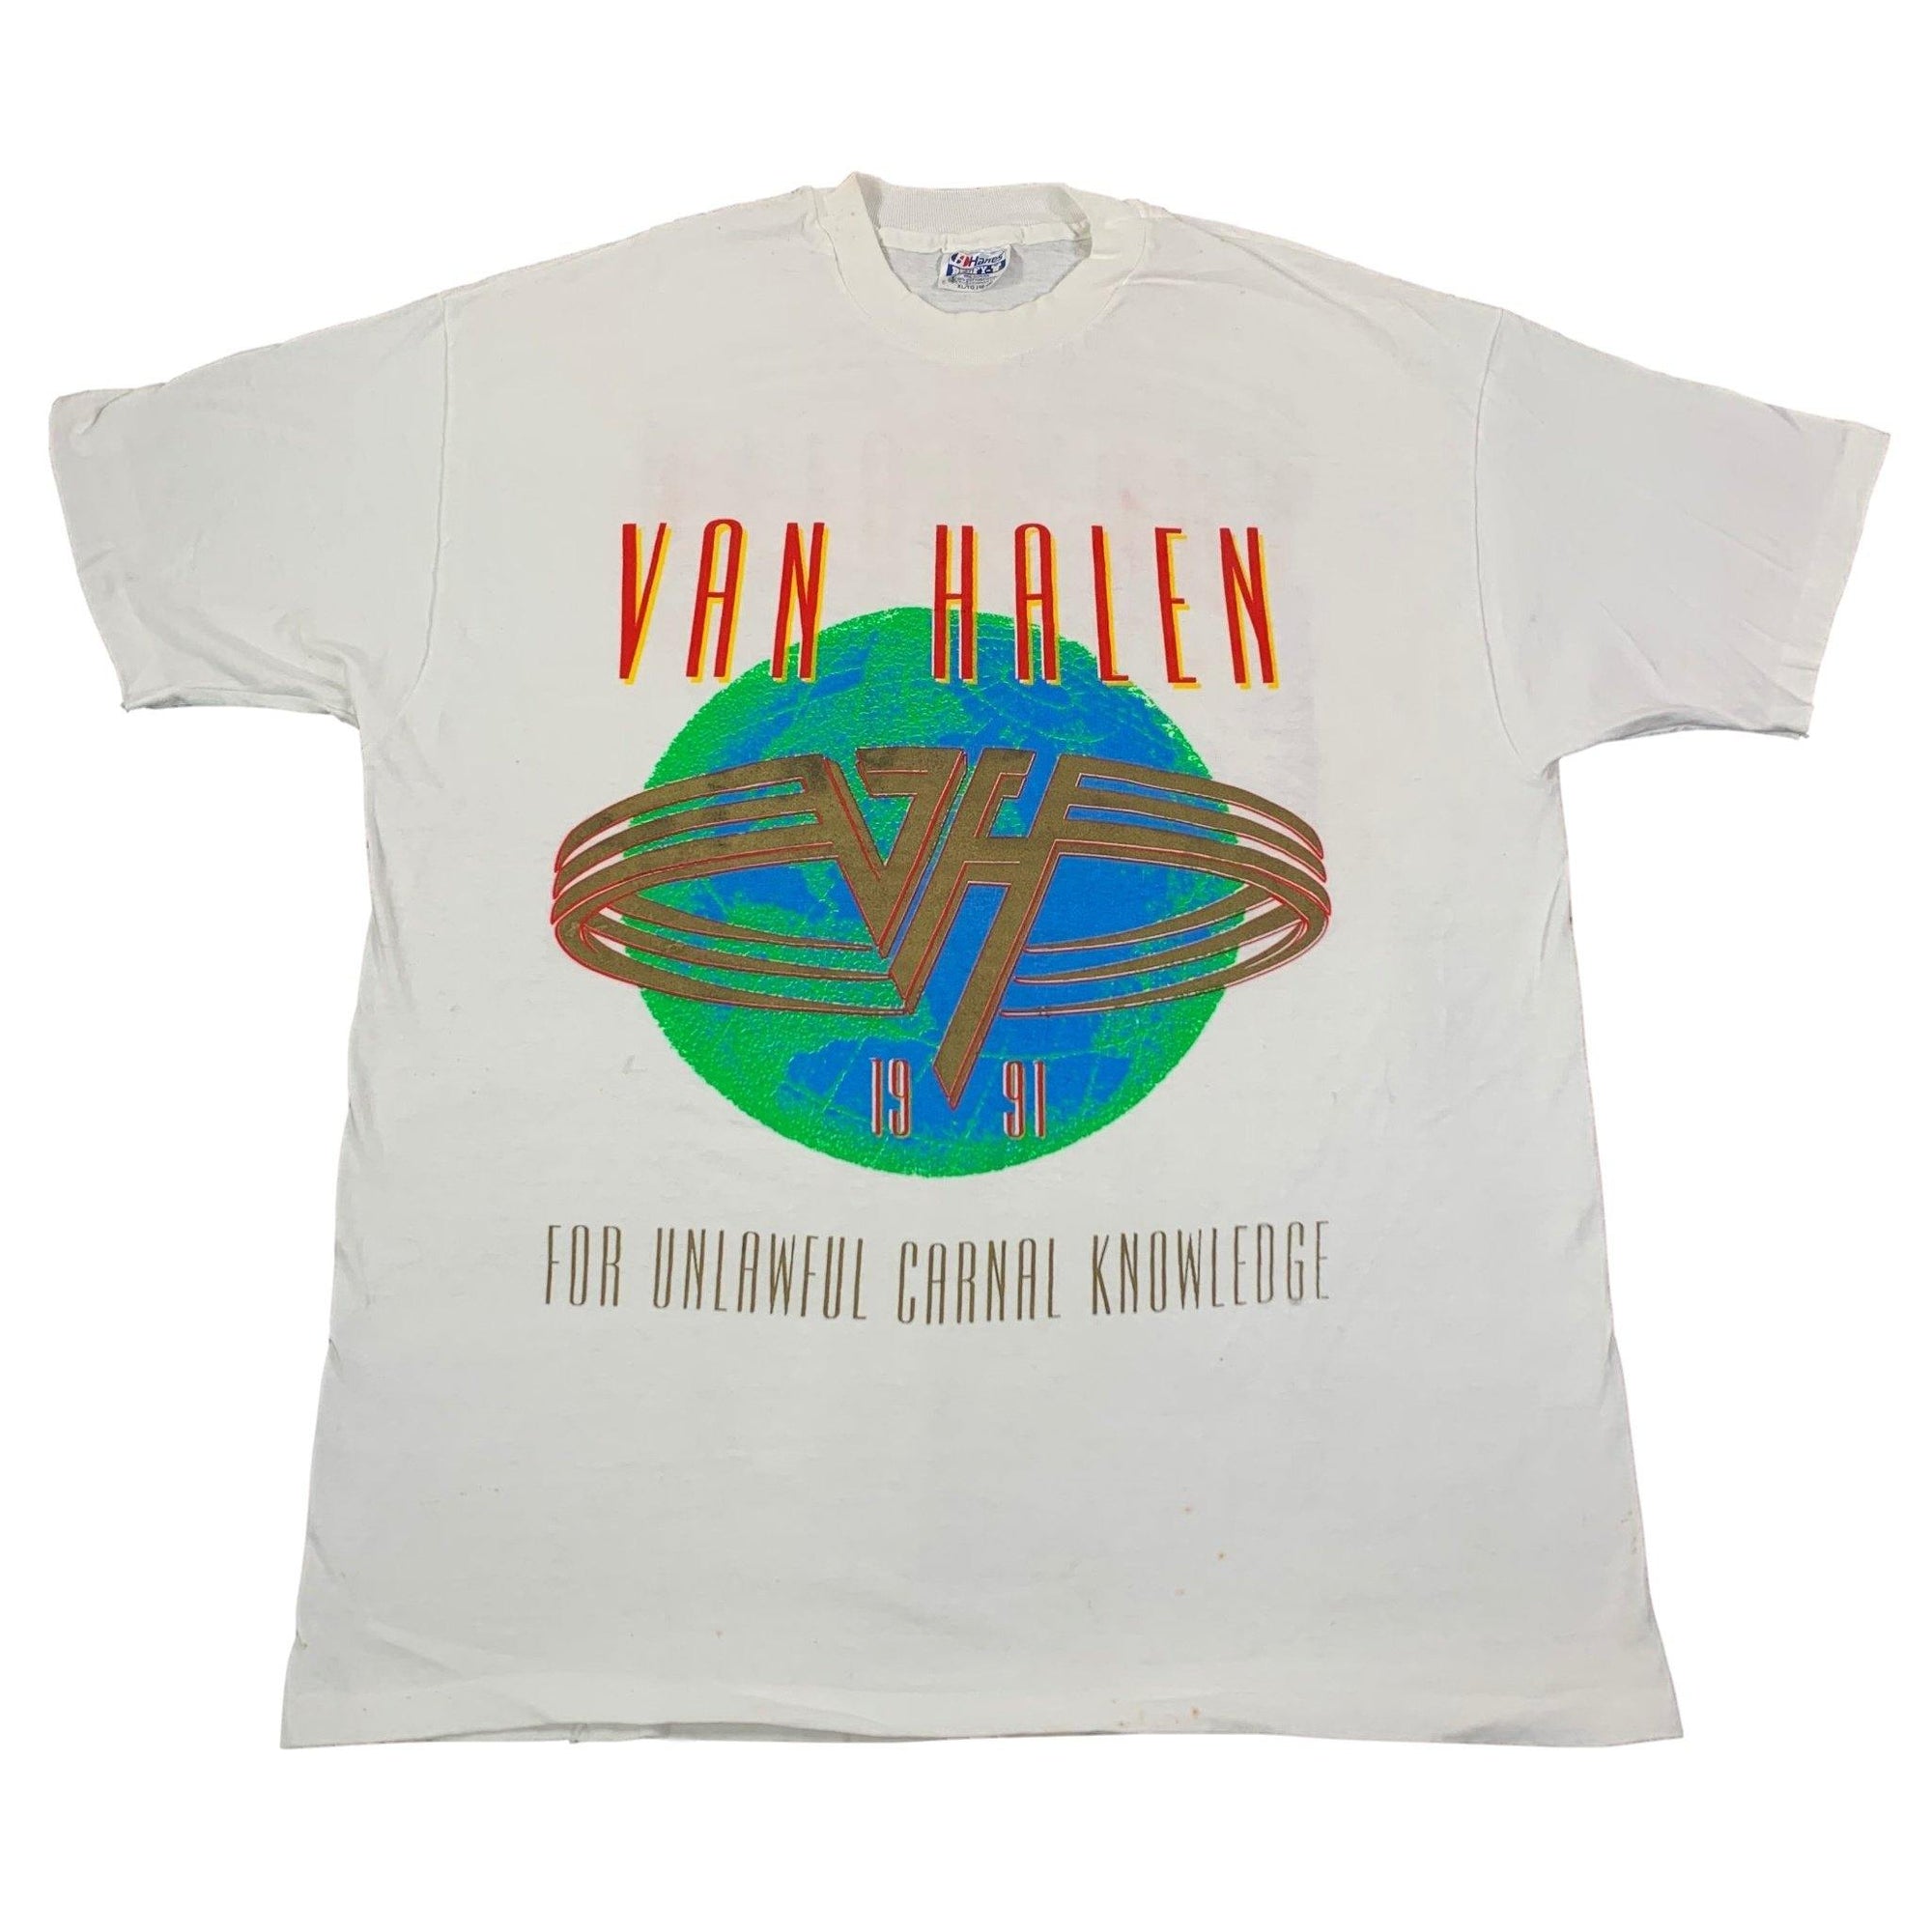 Vintage Van Halen "1991" T-Shirt - jointcustodydc